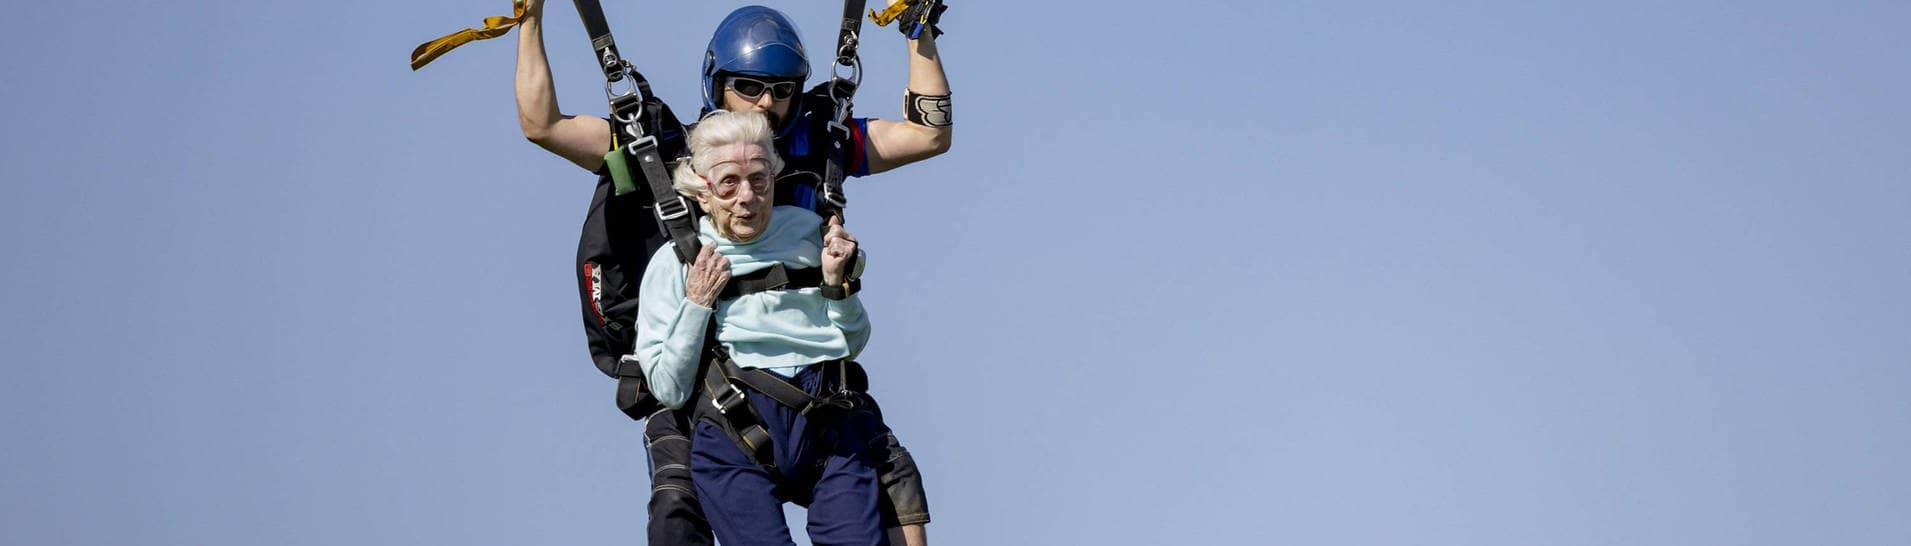 Die 104-jährige Dorothy Hoffner bei ihrem Tandemfallschirmsprung (Foto: IMAGO, IMAGO/ZUMA Wire)